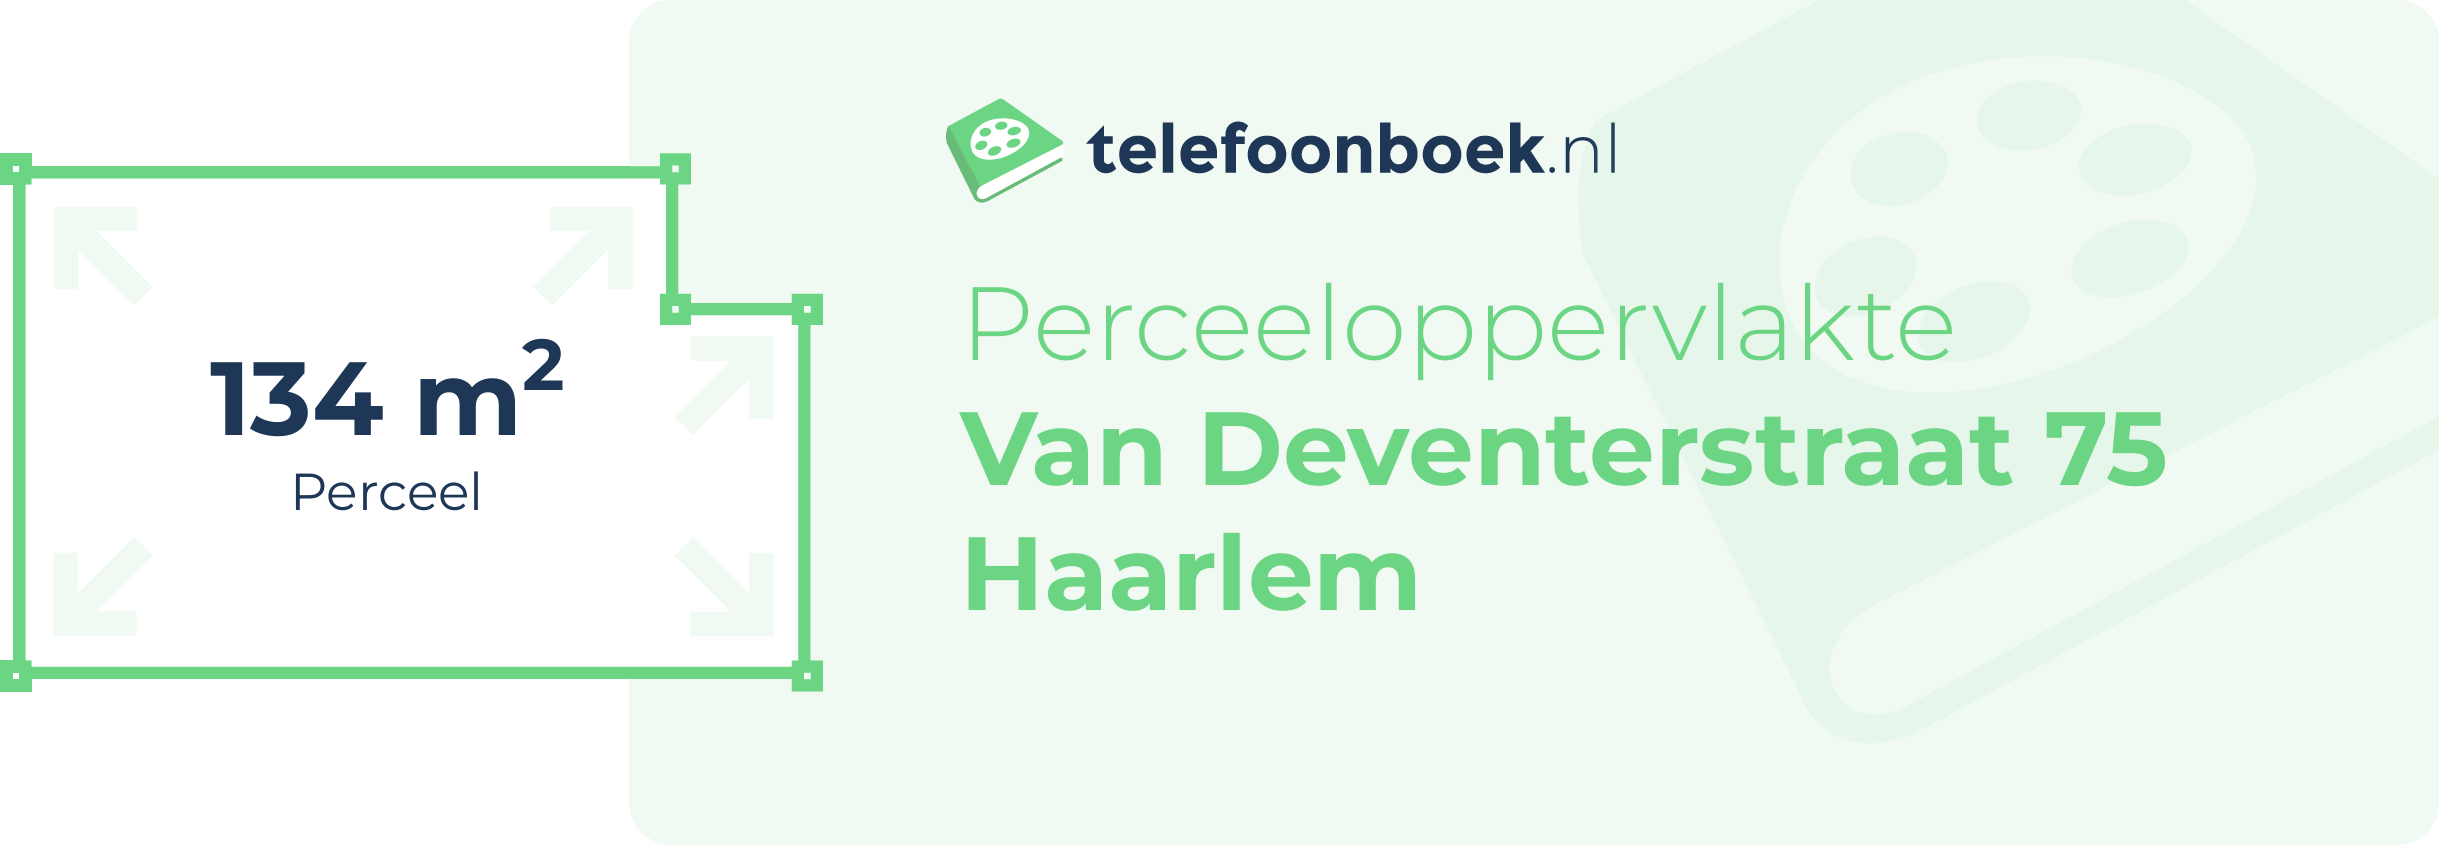 Perceeloppervlakte Van Deventerstraat 75 Haarlem